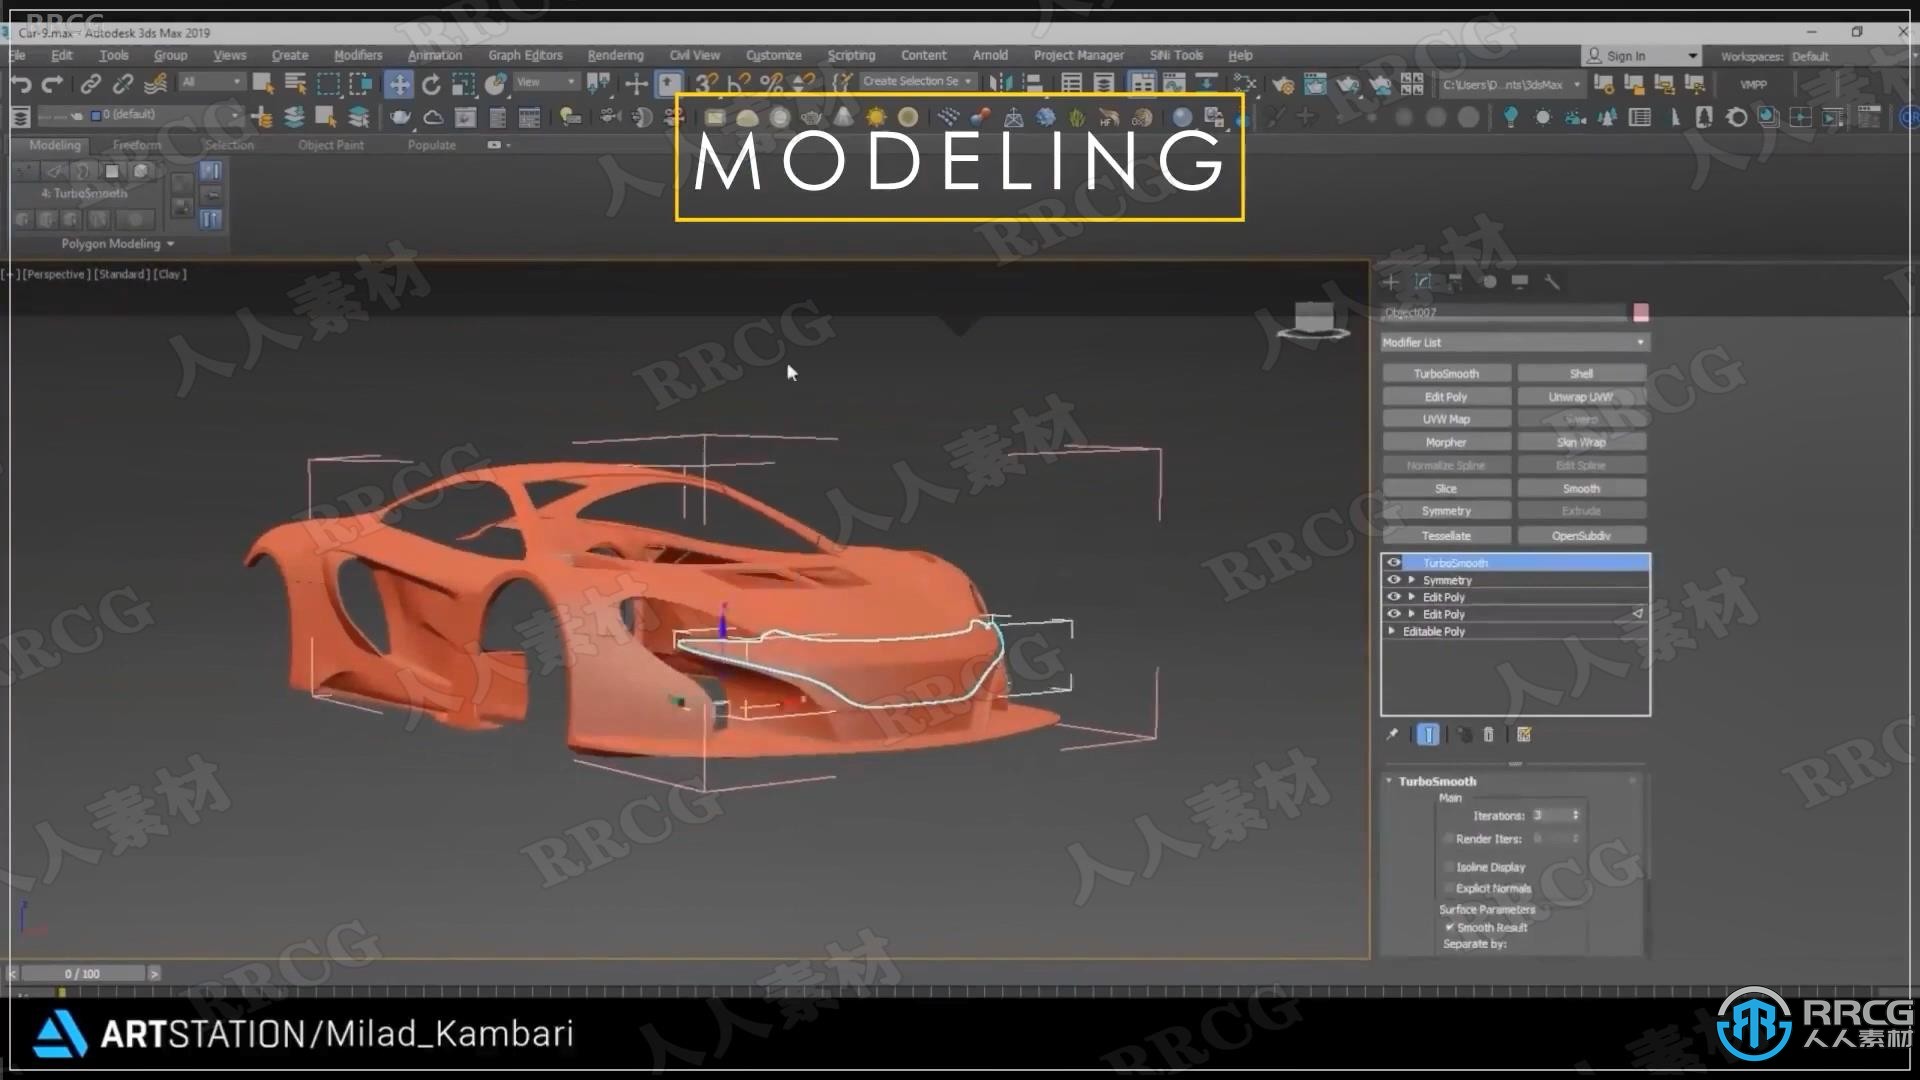 迈凯伦650S GT3超跑汽车完整制作流程视频教程